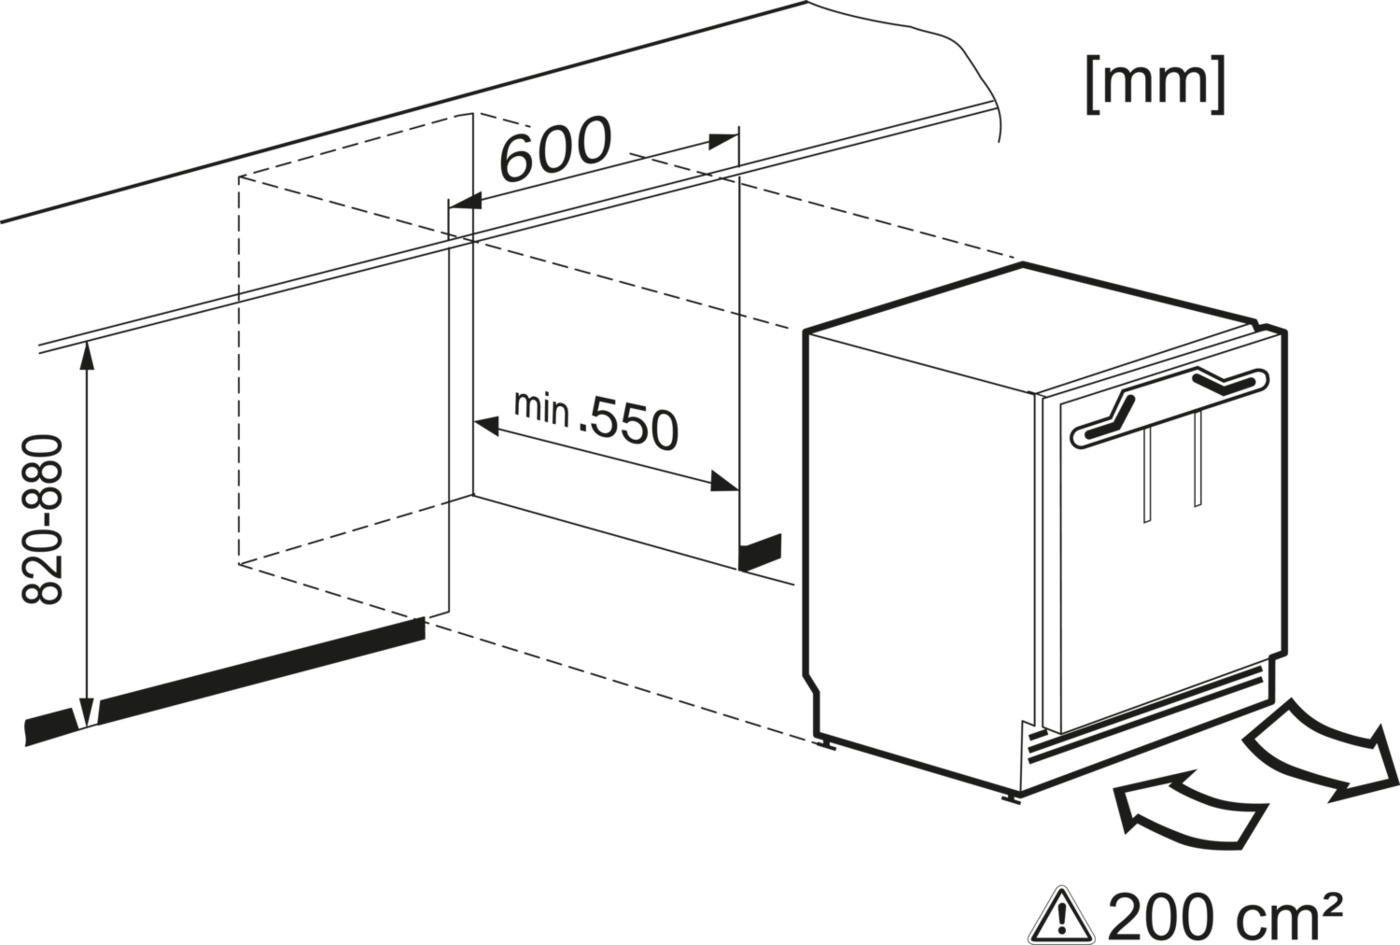 Integreeritav sügavkülmik ComfortFrost funktsiooniga, kõrgus 82 cm (F 31202 Ui) product photo View3 ZOOM